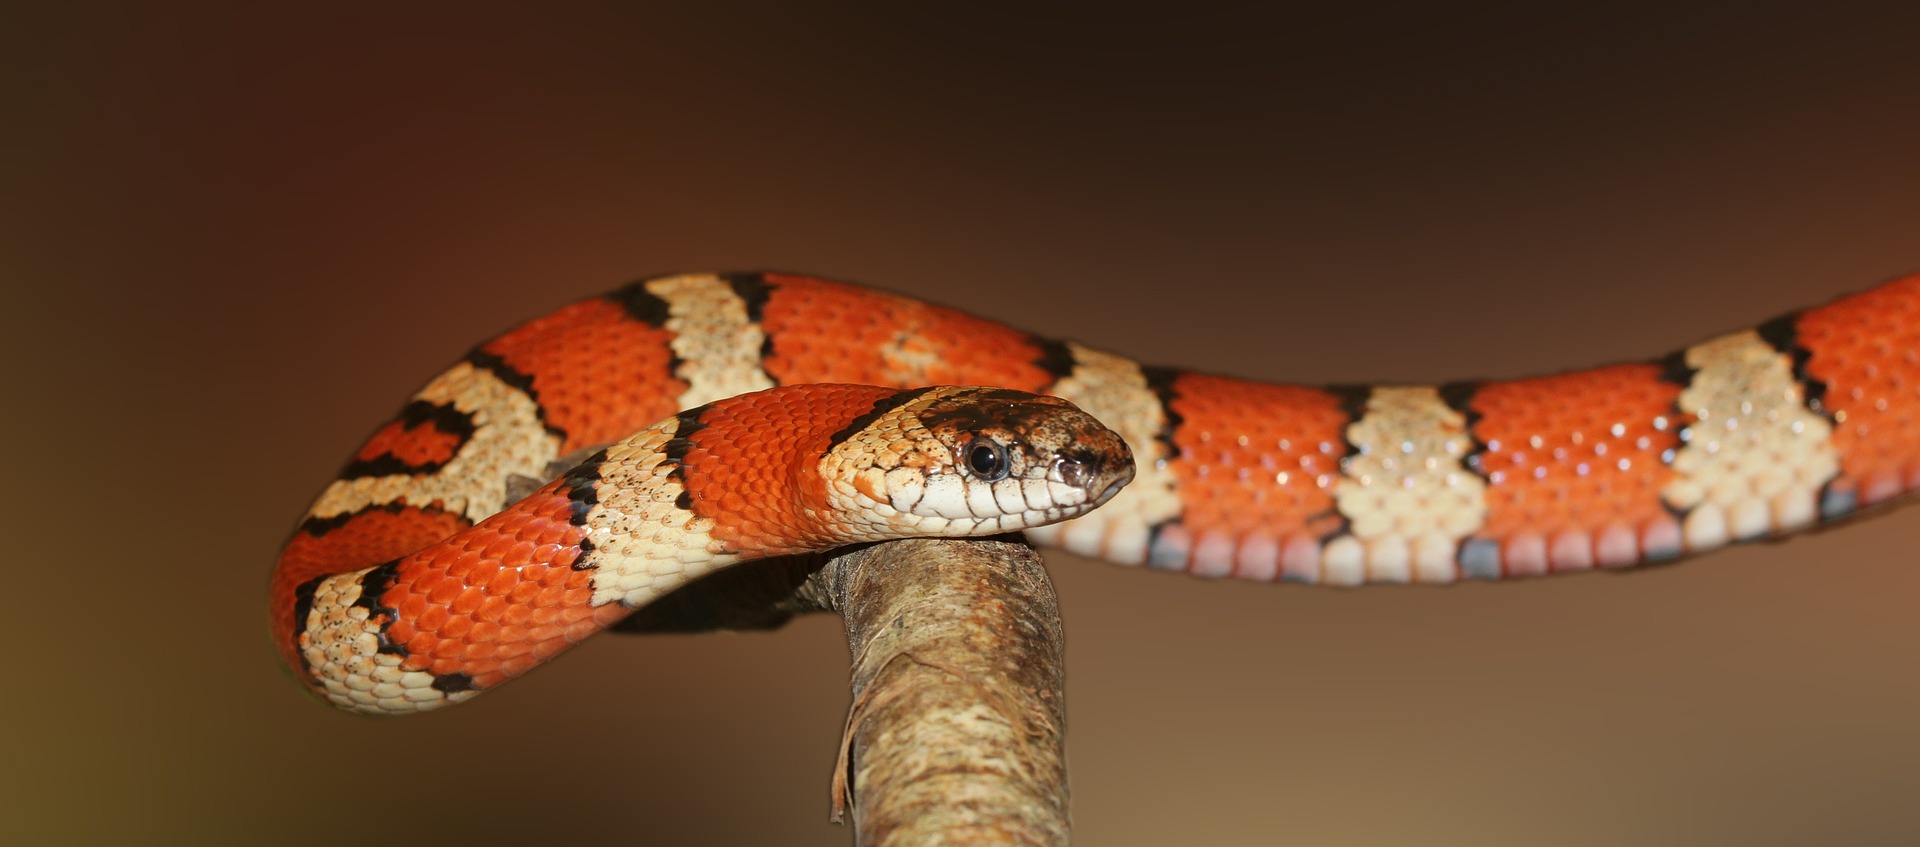 빨간색과 하얀색 줄무늬가 있는 뱀 